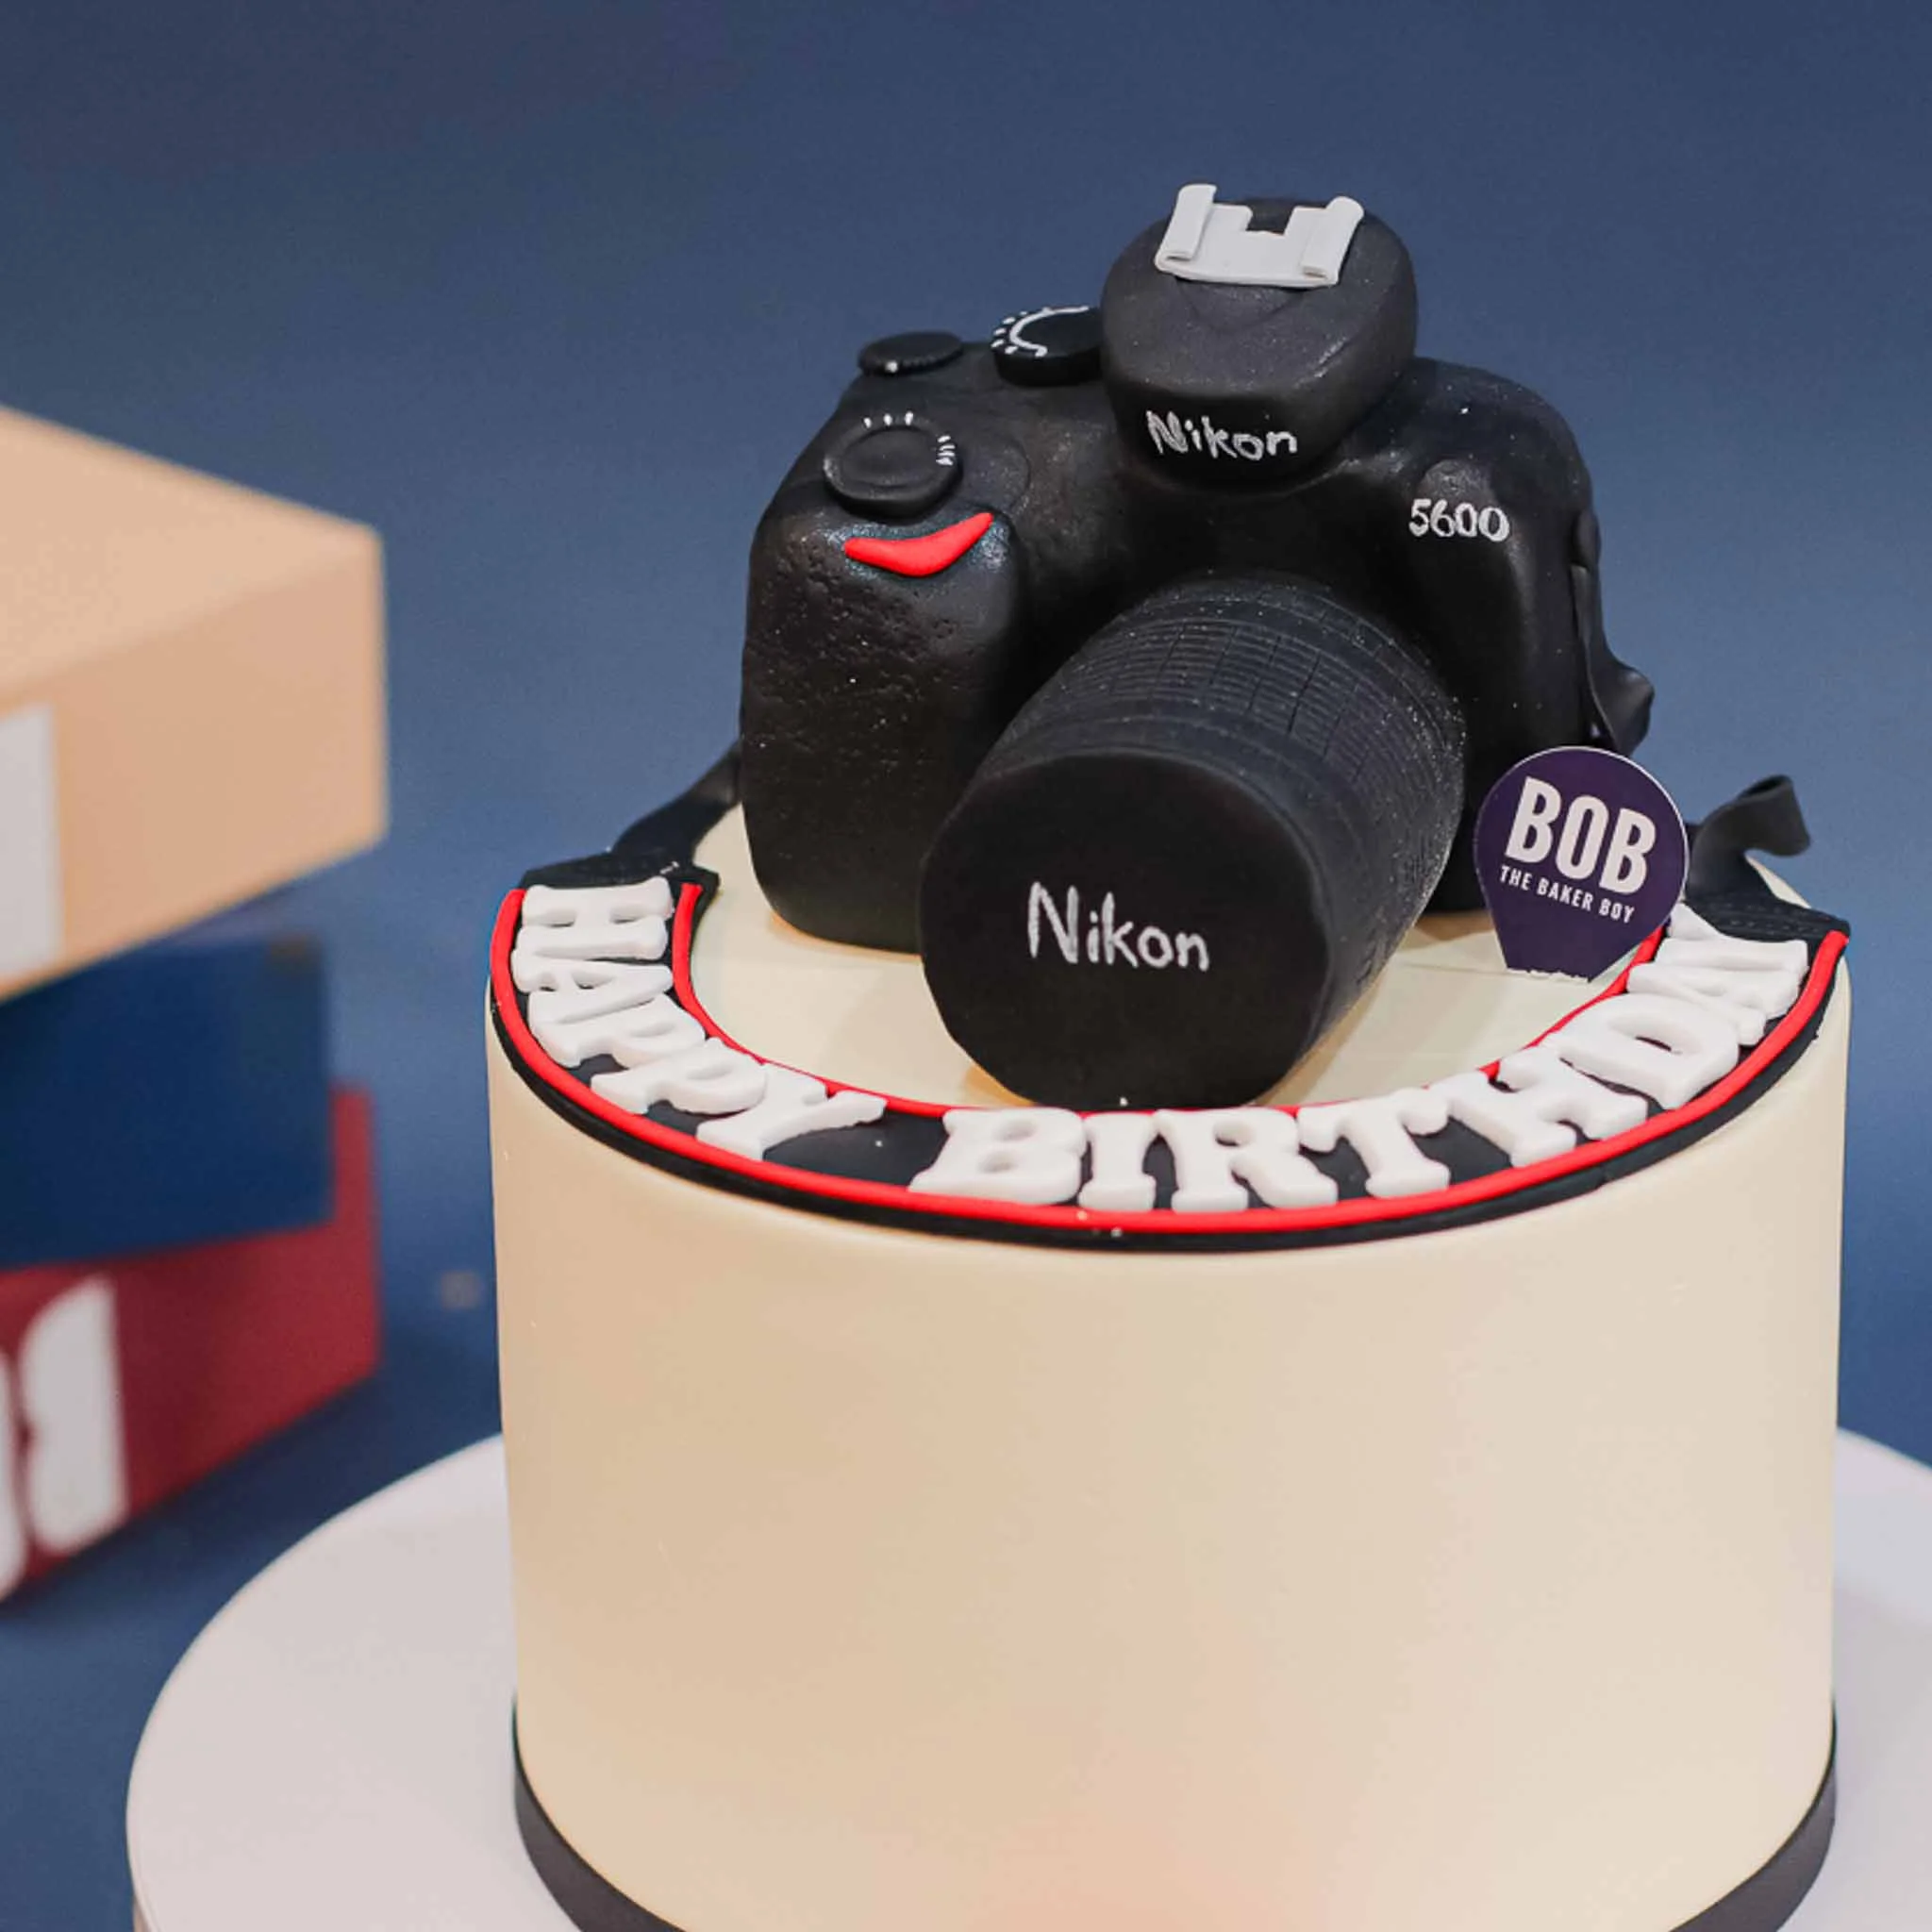 Birthday-cake 3D models - Sketchfab